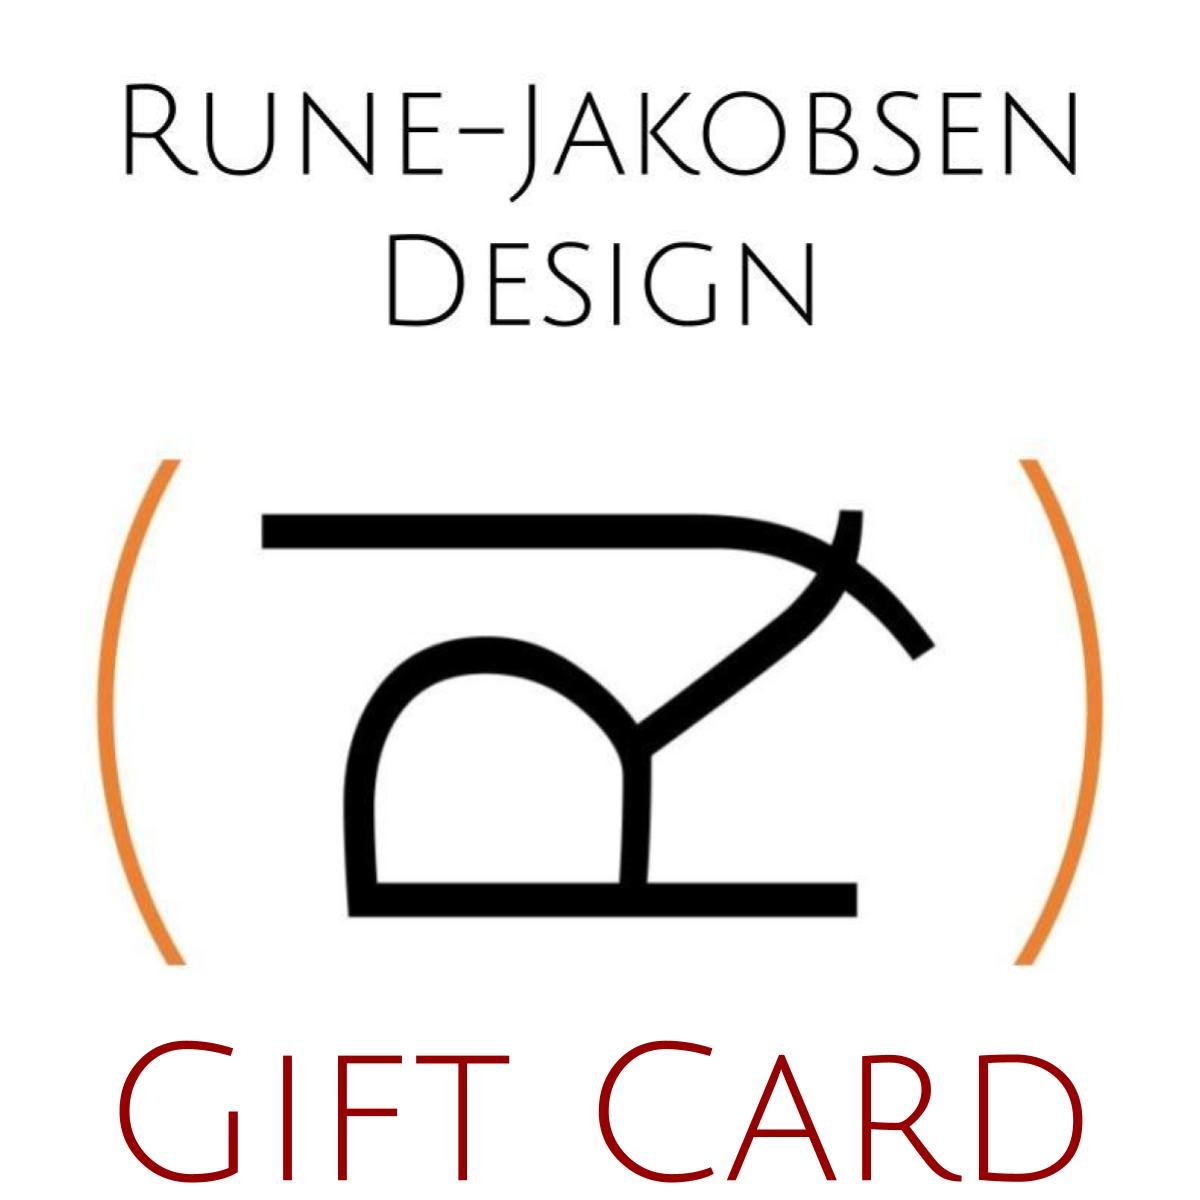 Rune - Jakobsen Design Gavekort_1 by Rune - Jakobsen Design